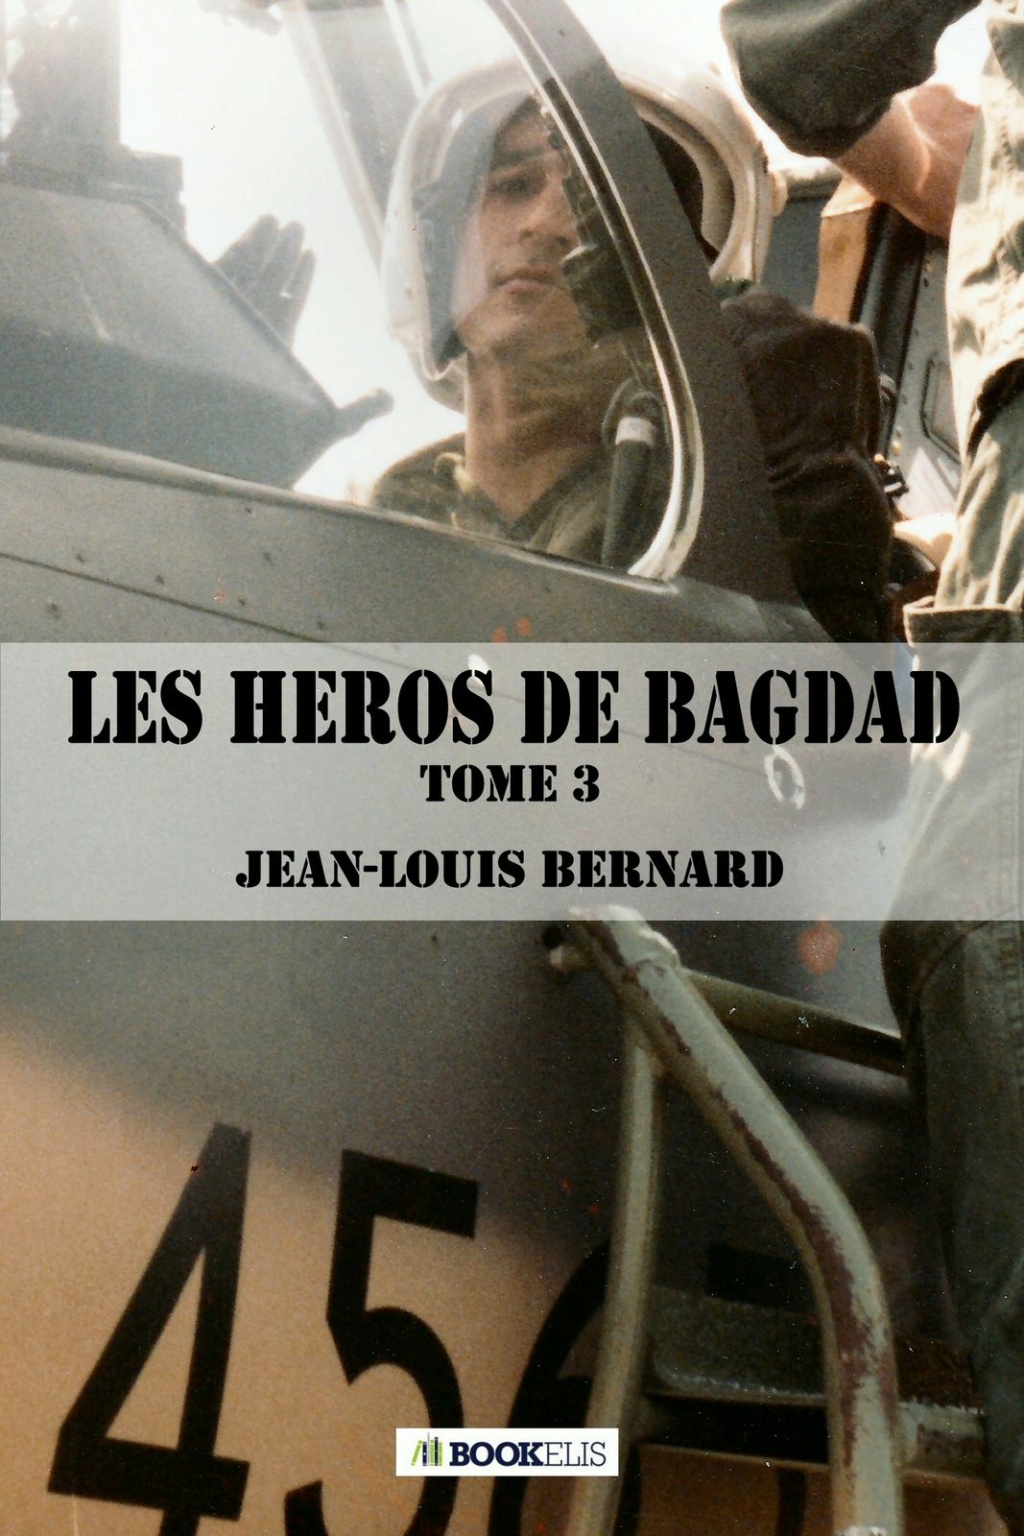 Les héros de Bagdad, d'une guerre à l'autre - tome III - Jean-Louis Bernard Image-10